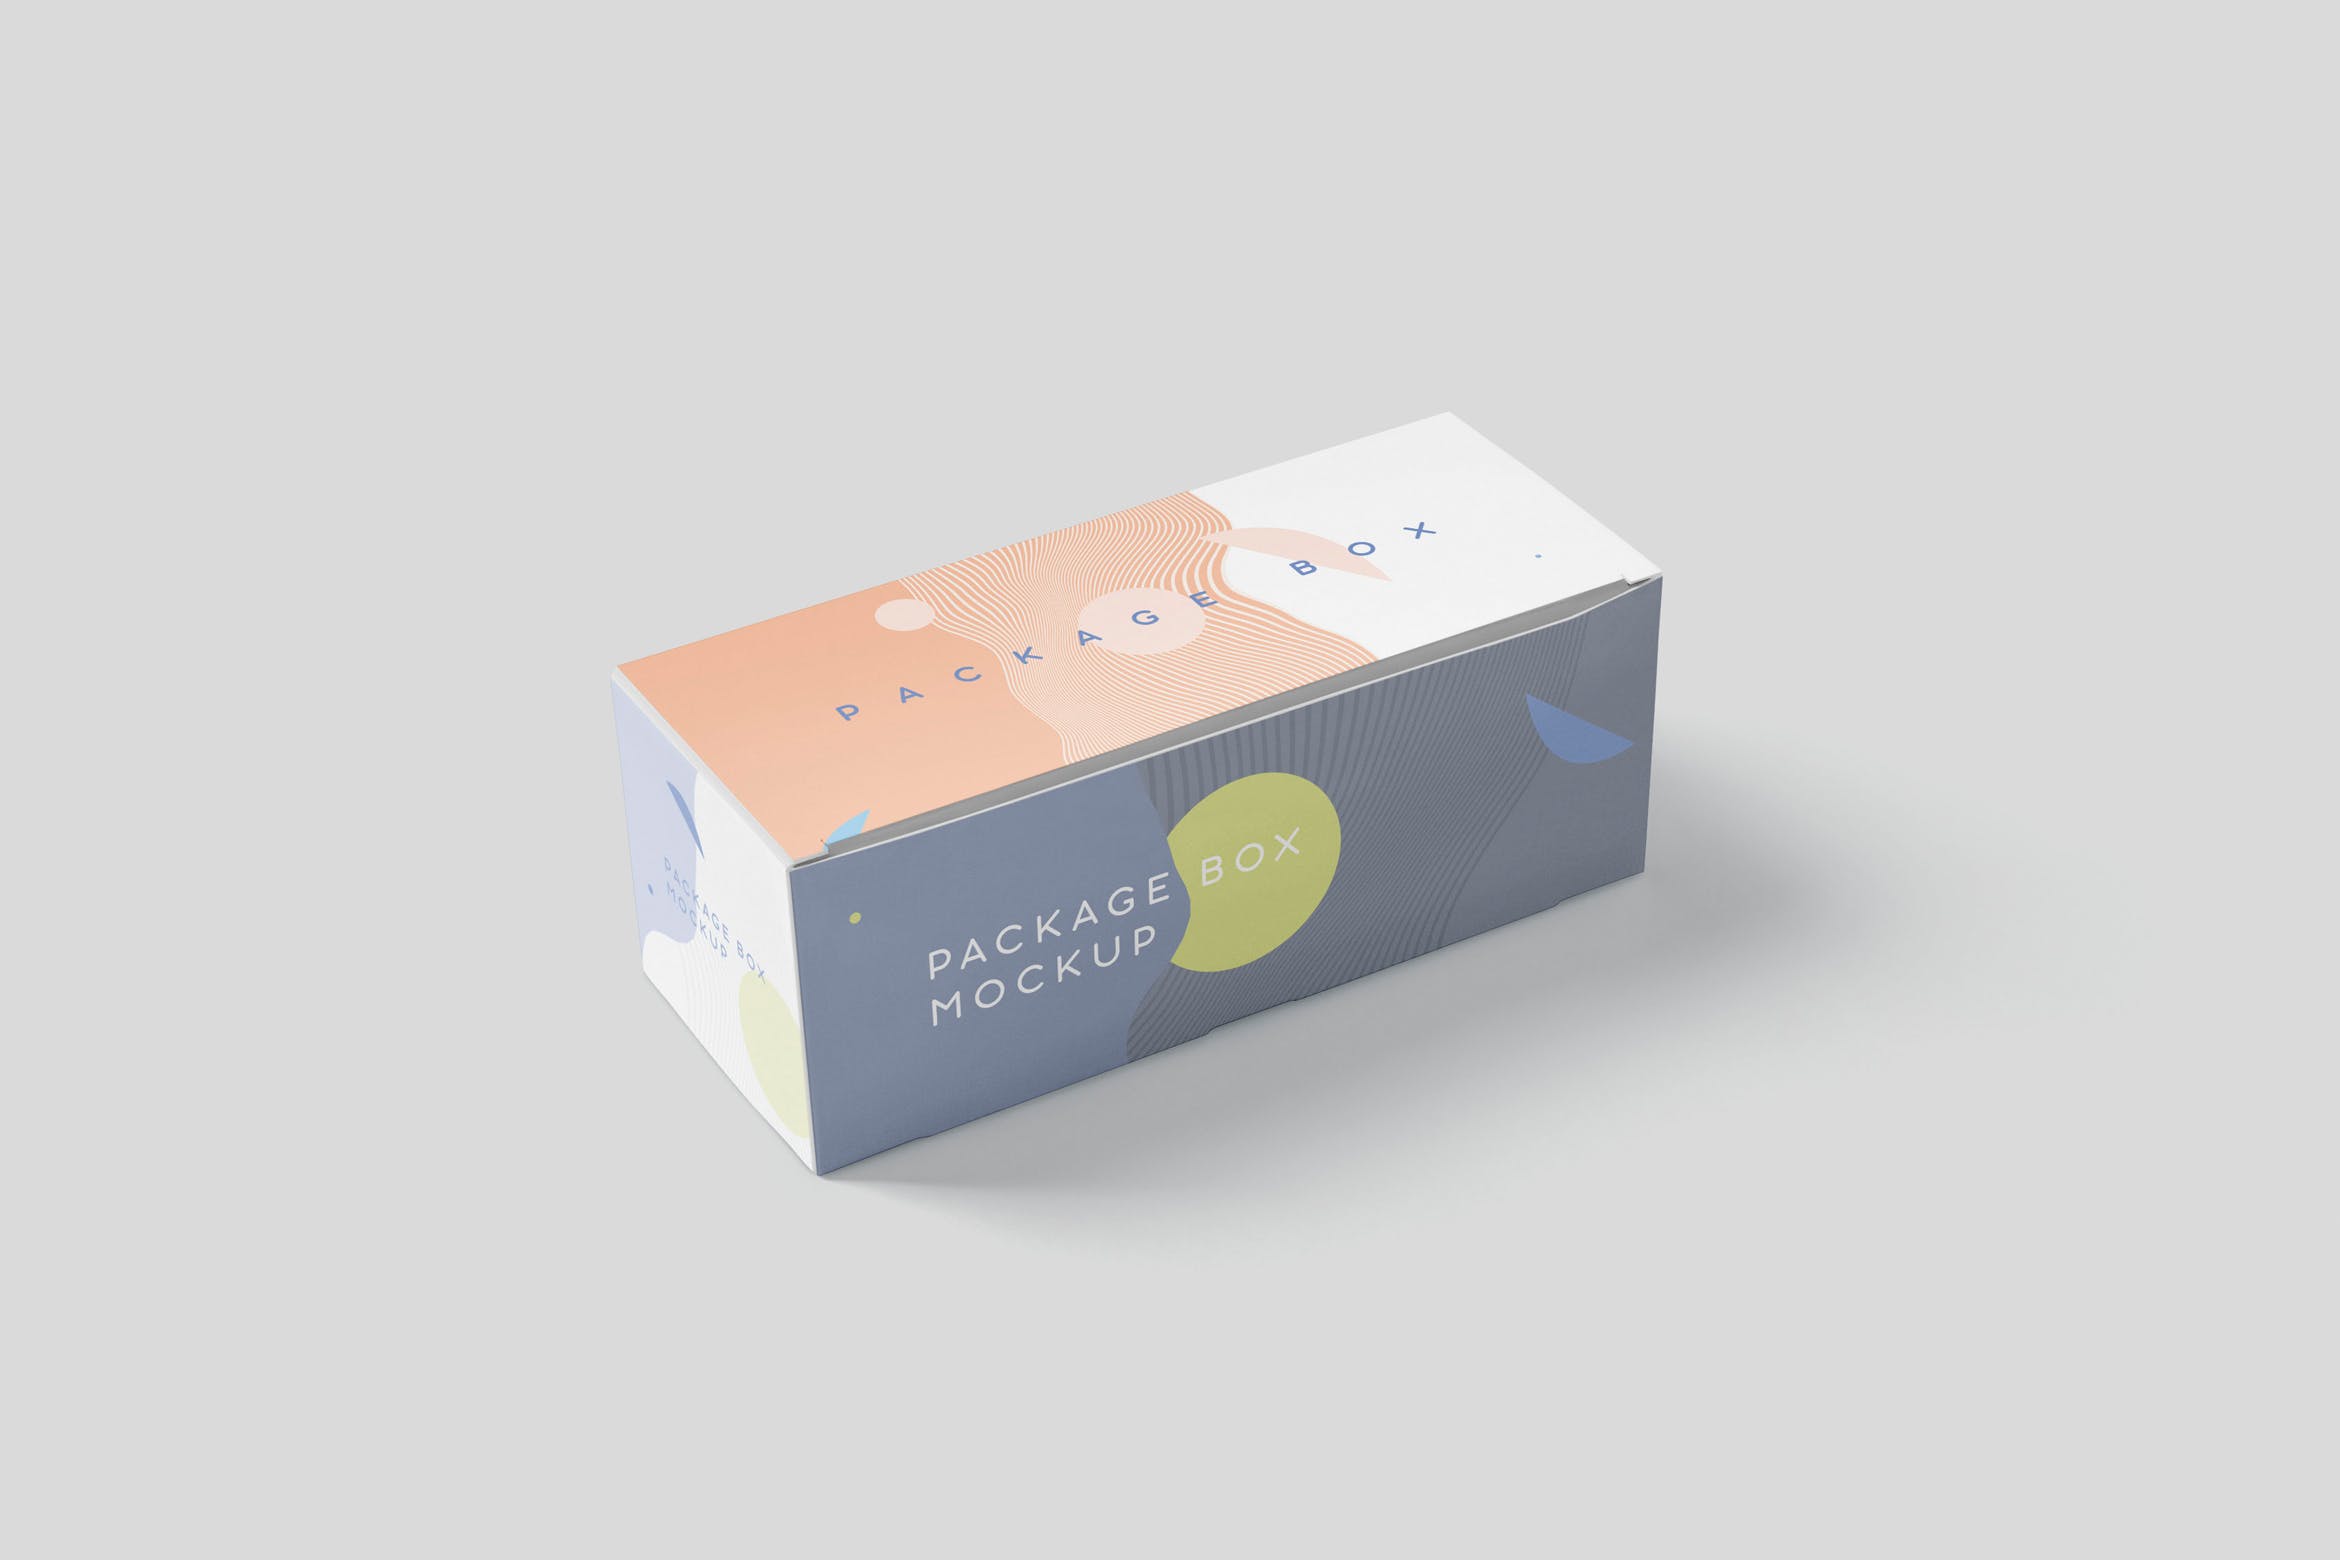 宽矩形包装盒外观设计效果图素材中国精选 Package Box Mock-Up Set – Wide Rectangle插图